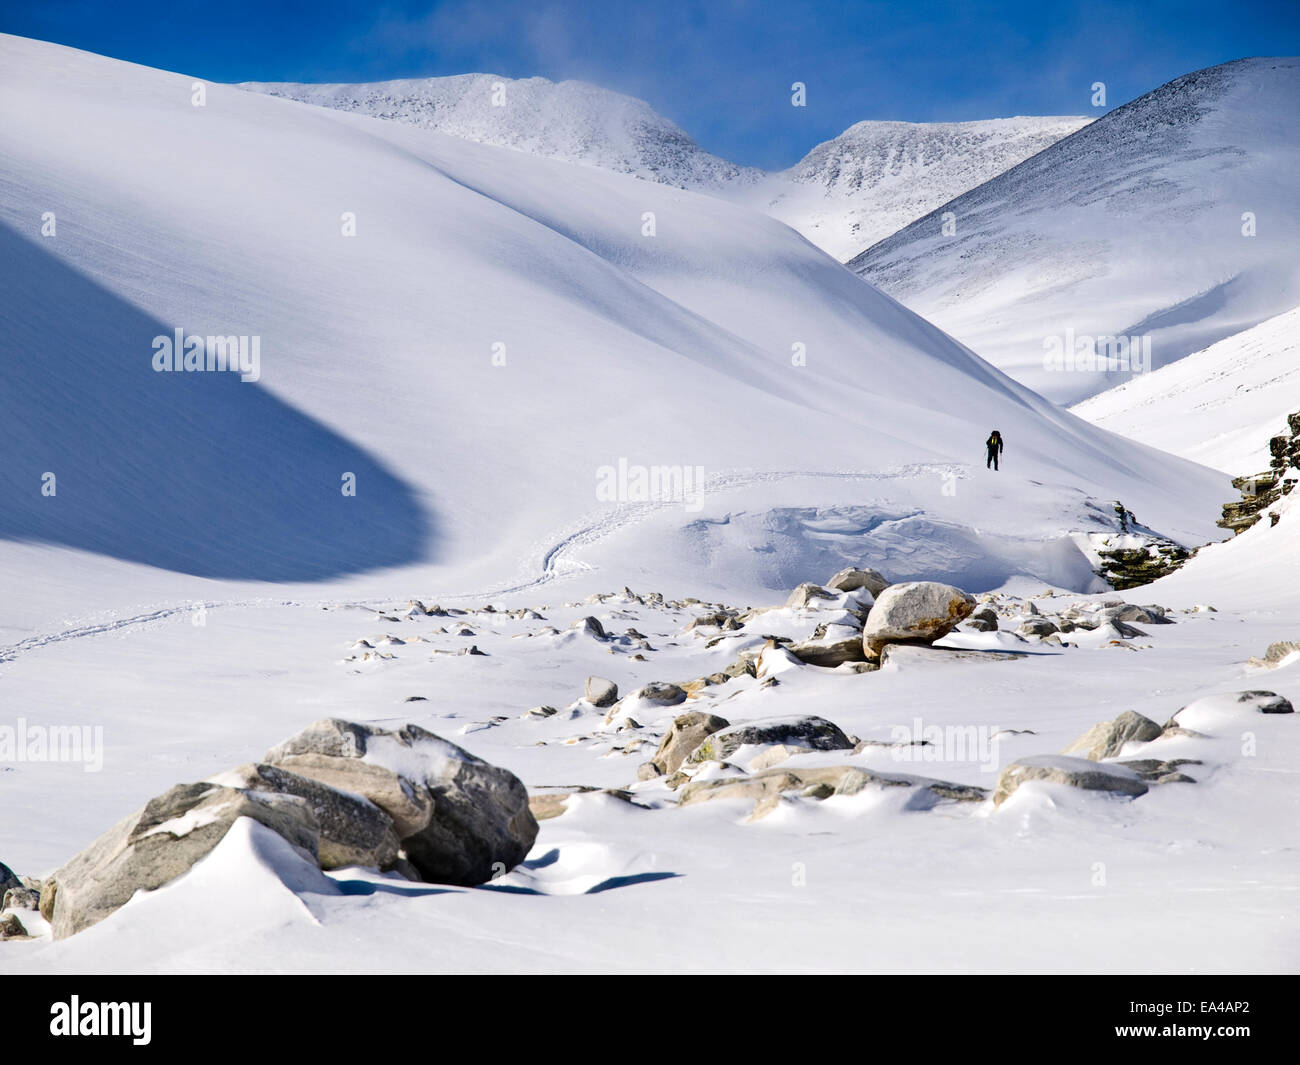 Tourer Ski Ski de randonnée en montagnes Rondane, Norvège Banque D'Images